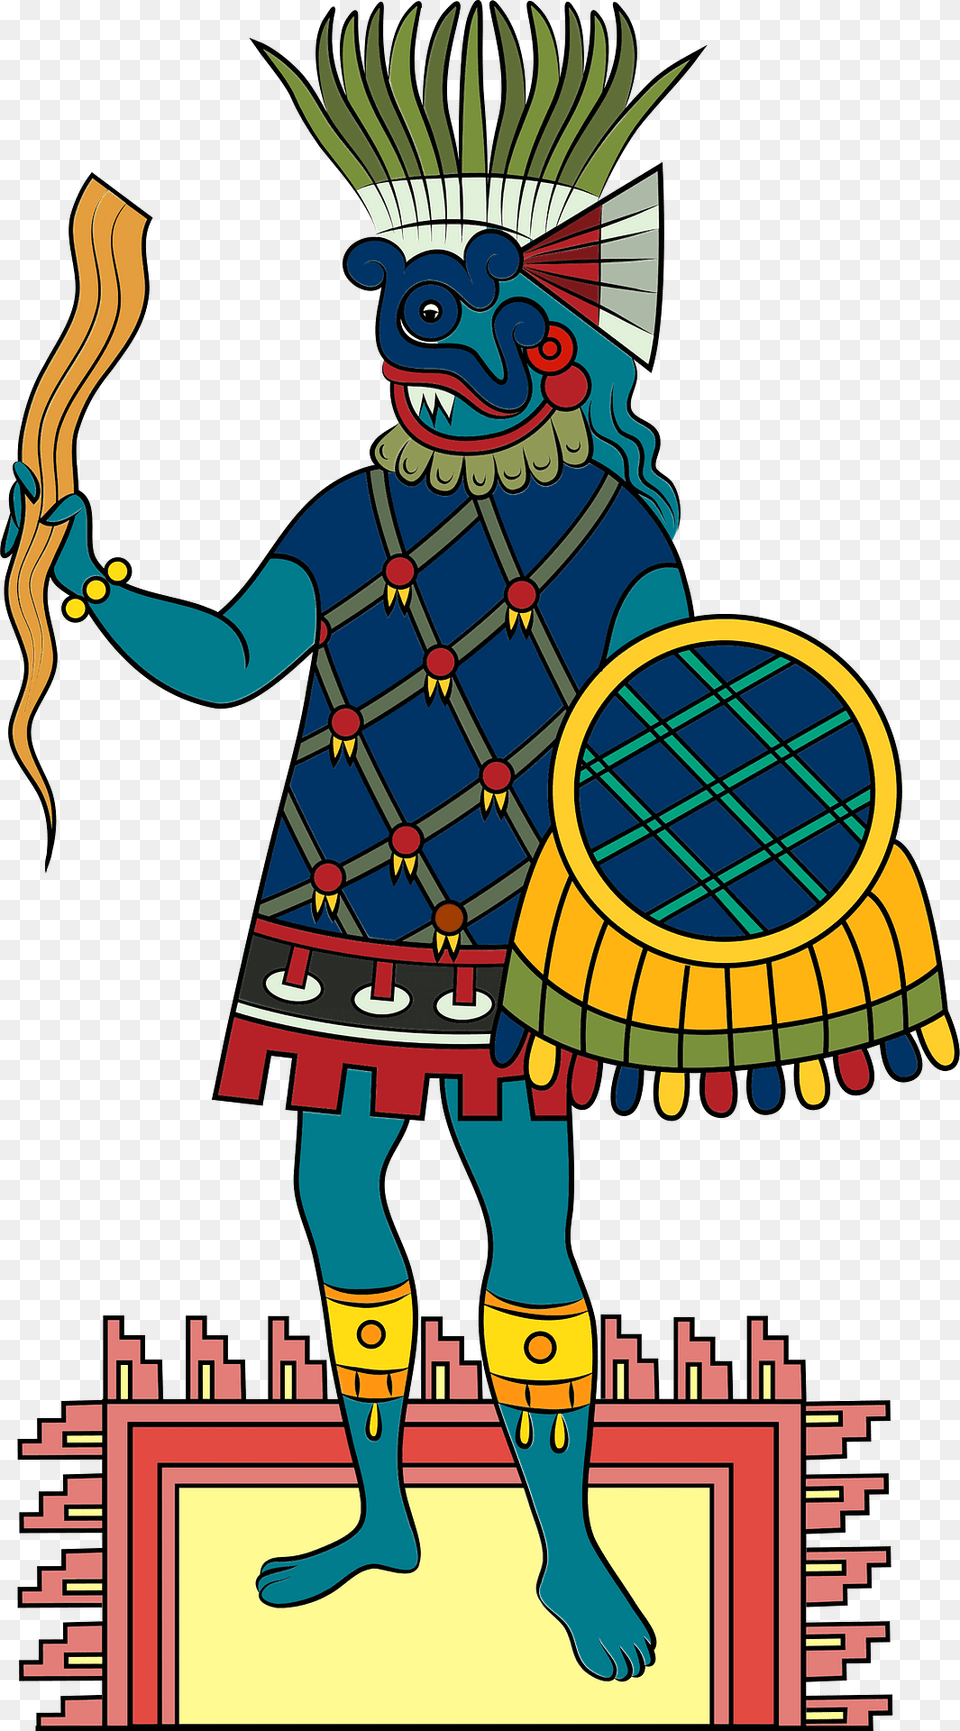 Tlaloc Aztec God Of Rain Fertility And Water Clipart, Book, Comics, Publication, Cartoon Free Png Download